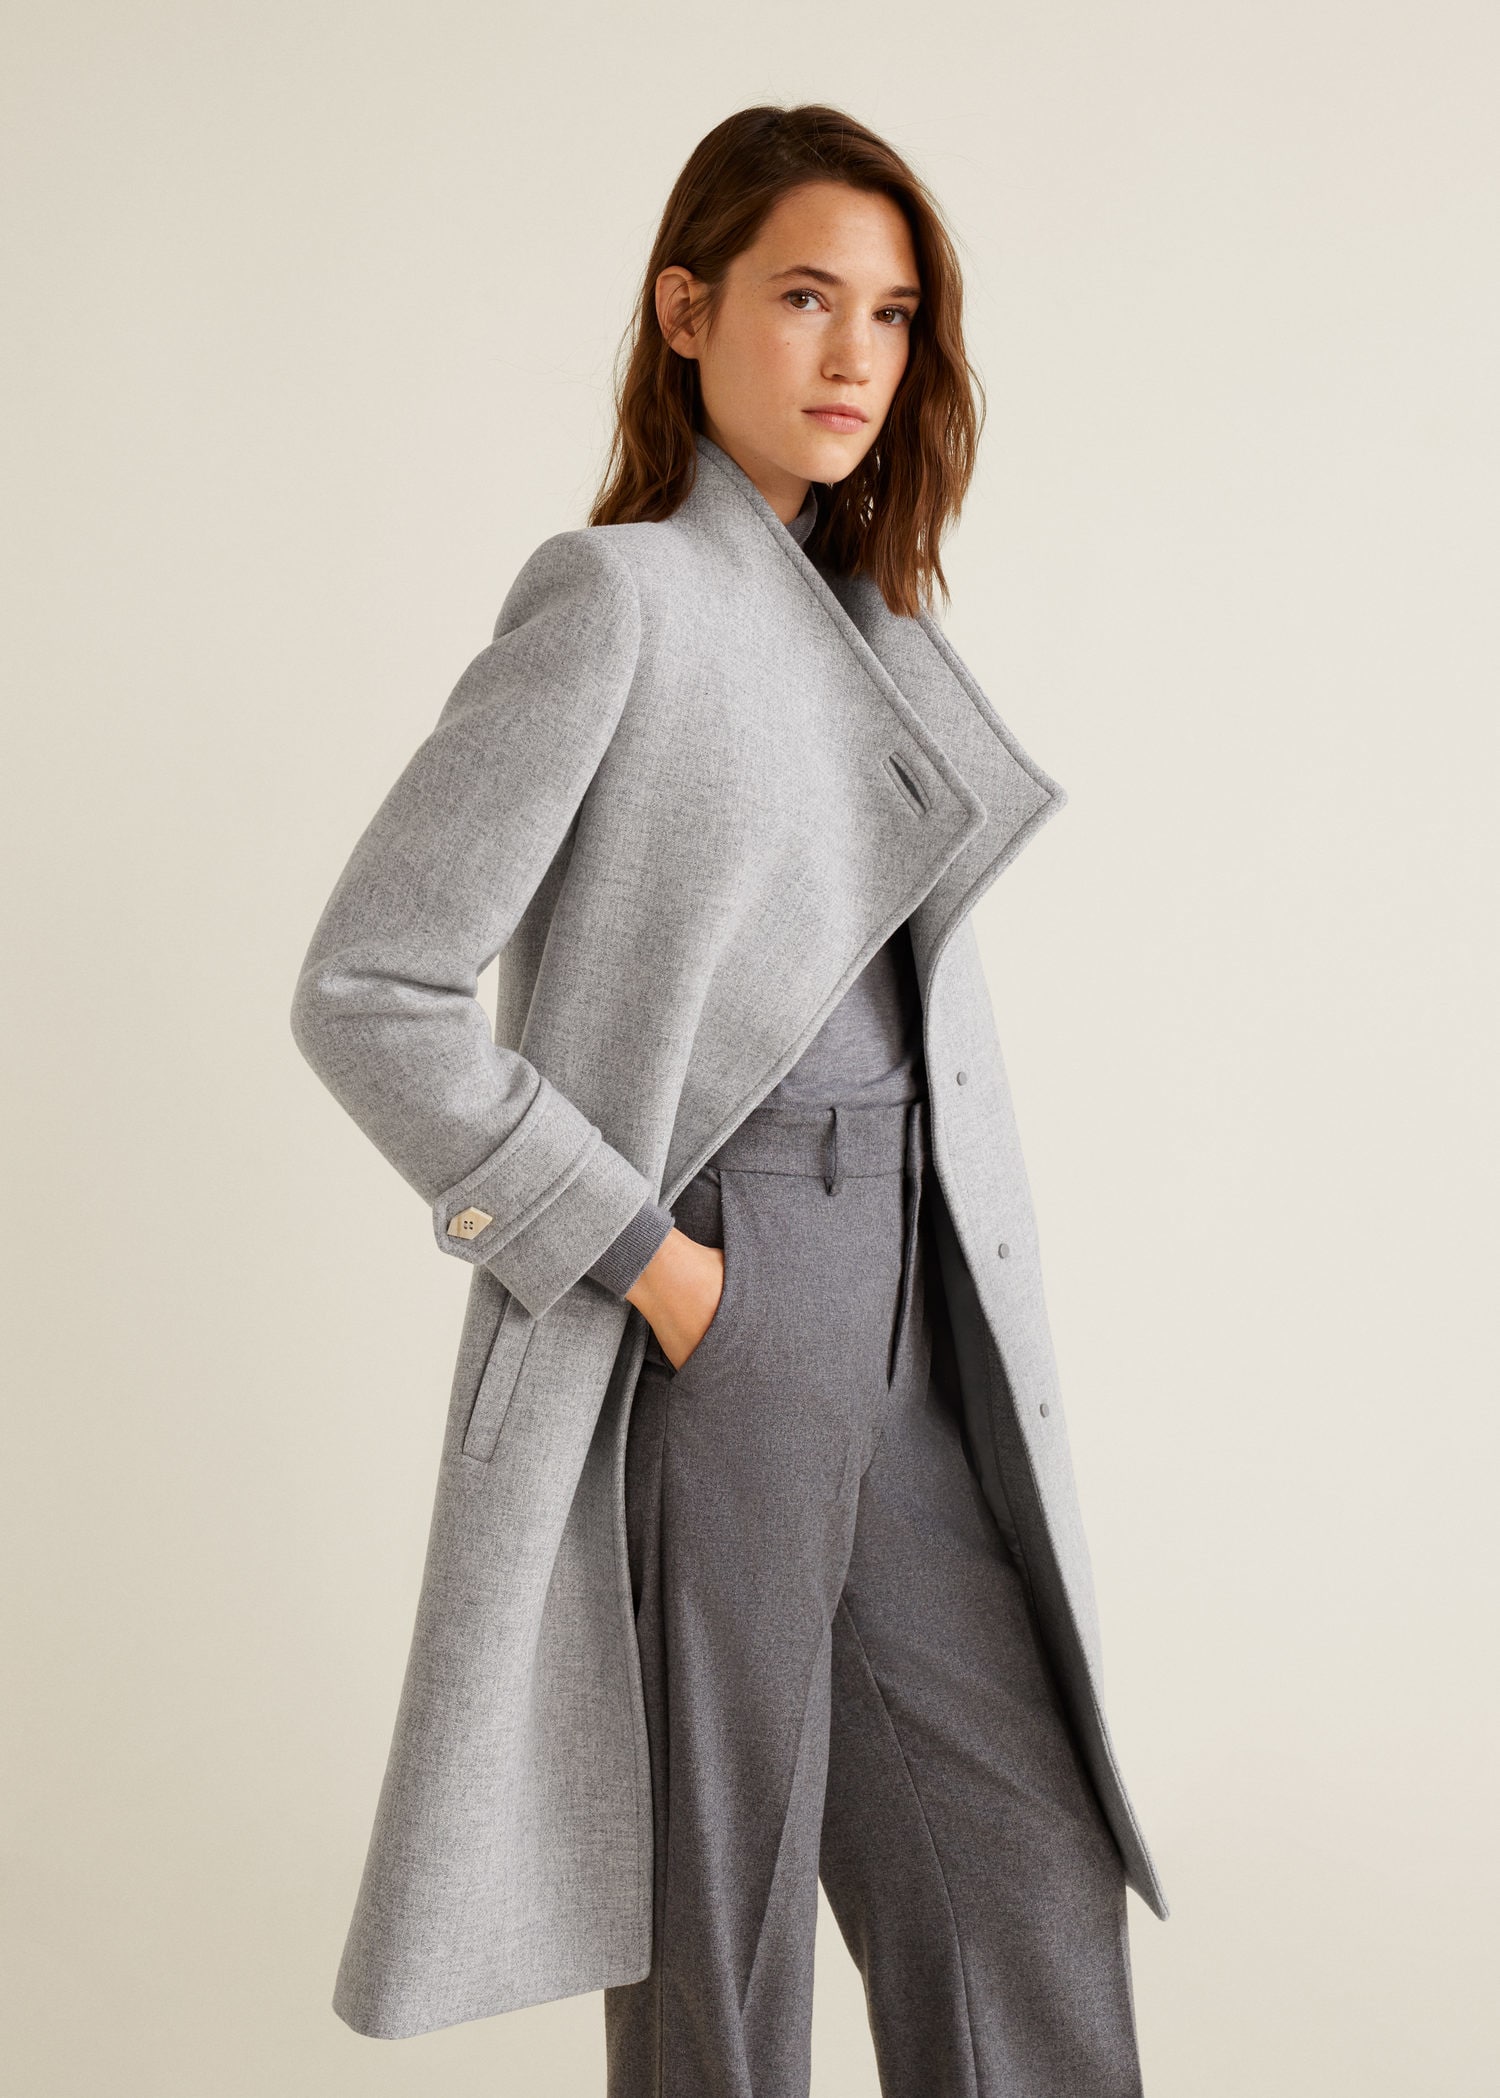 manteau laine femme gris clair